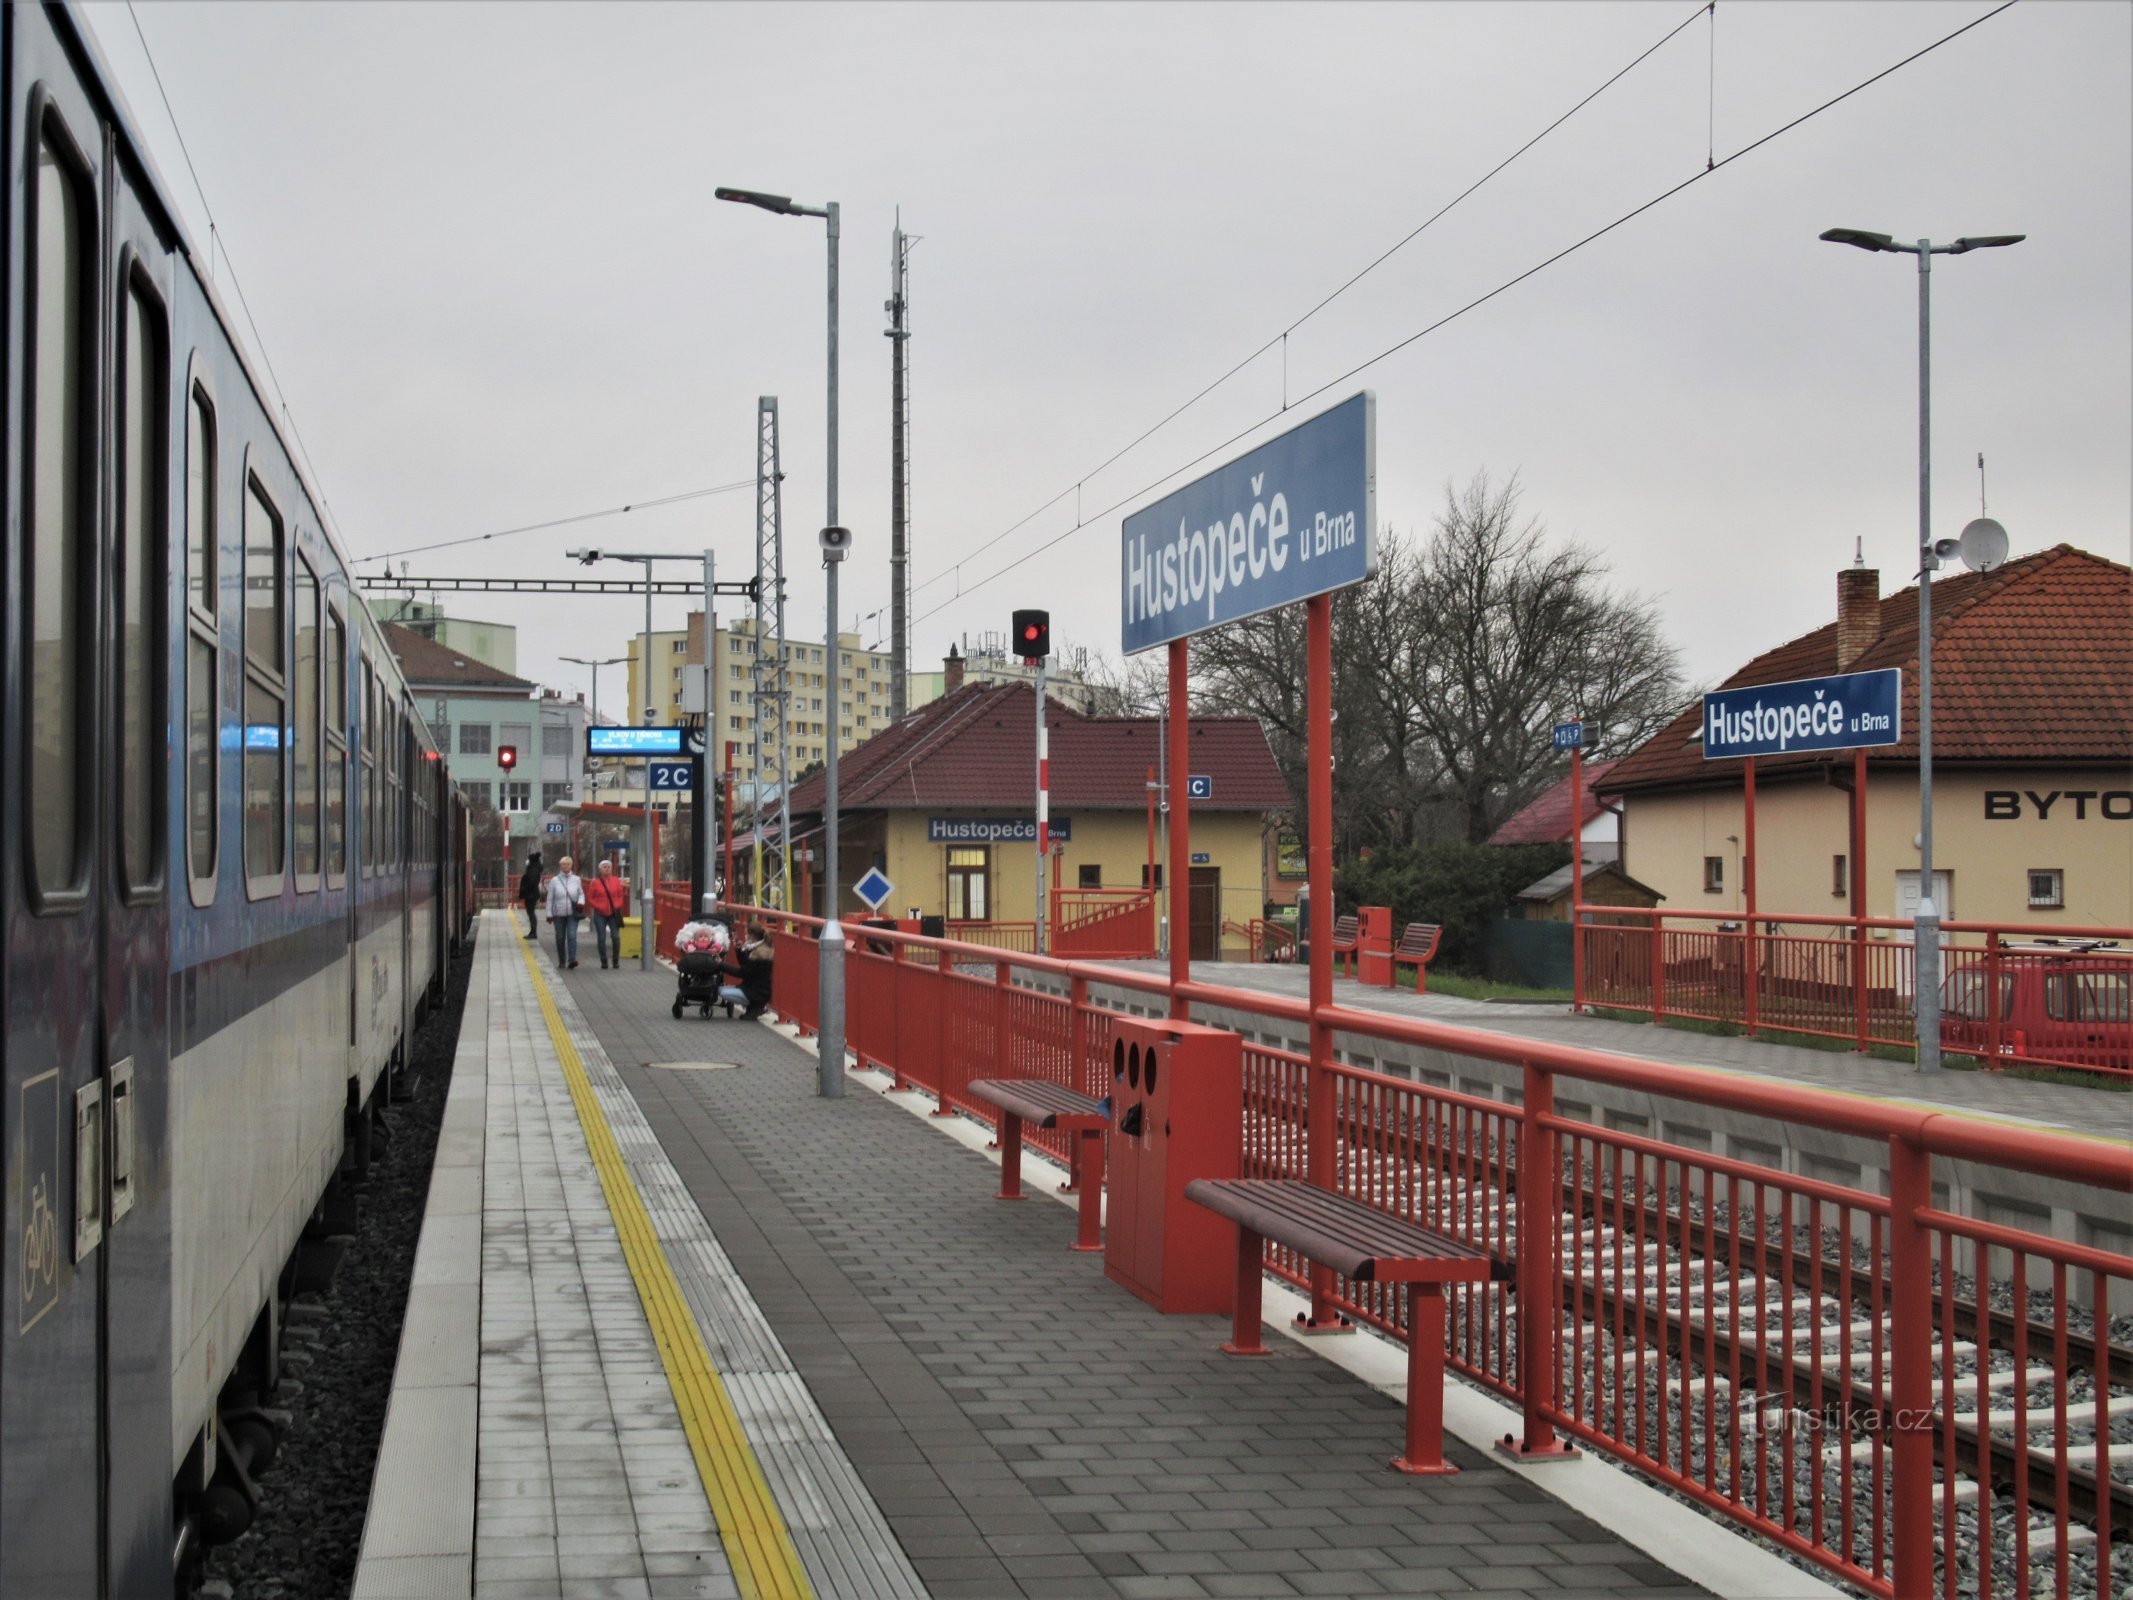 Nově otevřená elektrifikovaná stanice s příjezdem vlaku v prosinci 2020